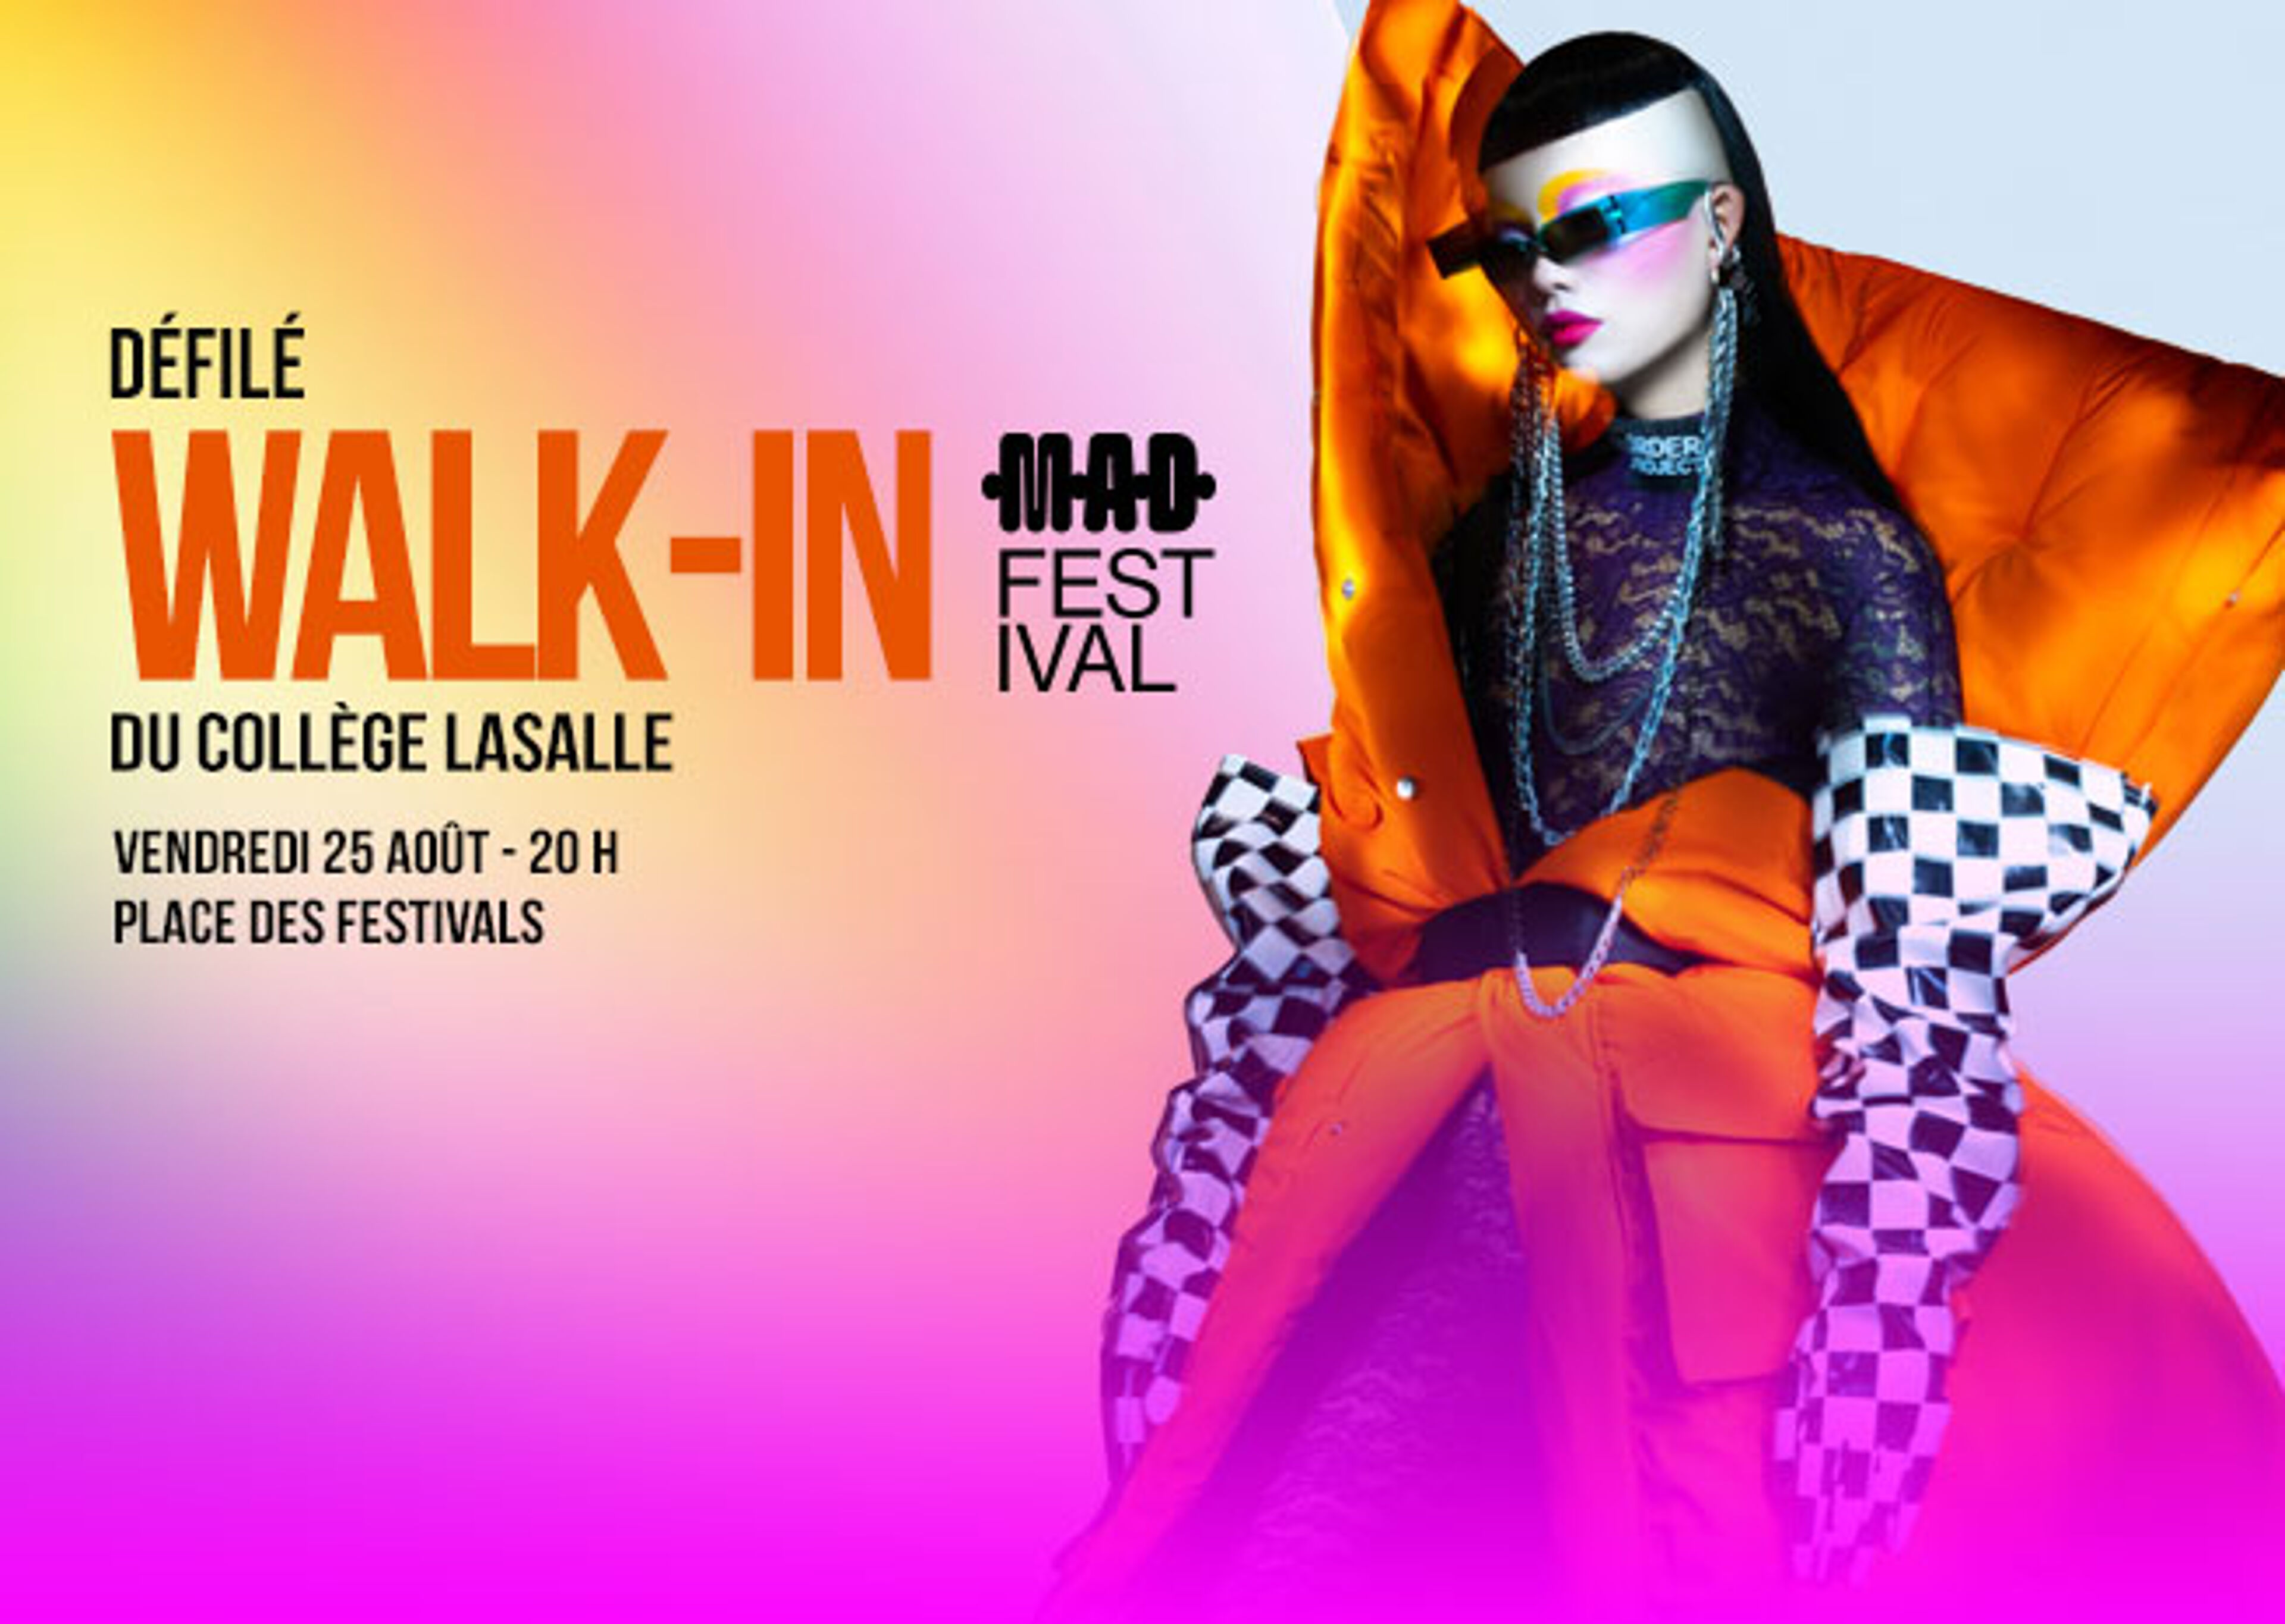 Affiche promotionnelle pour le défilé de mode WALK-IN du Collège LaSalle, avec un mannequin en tenue audacieuse.